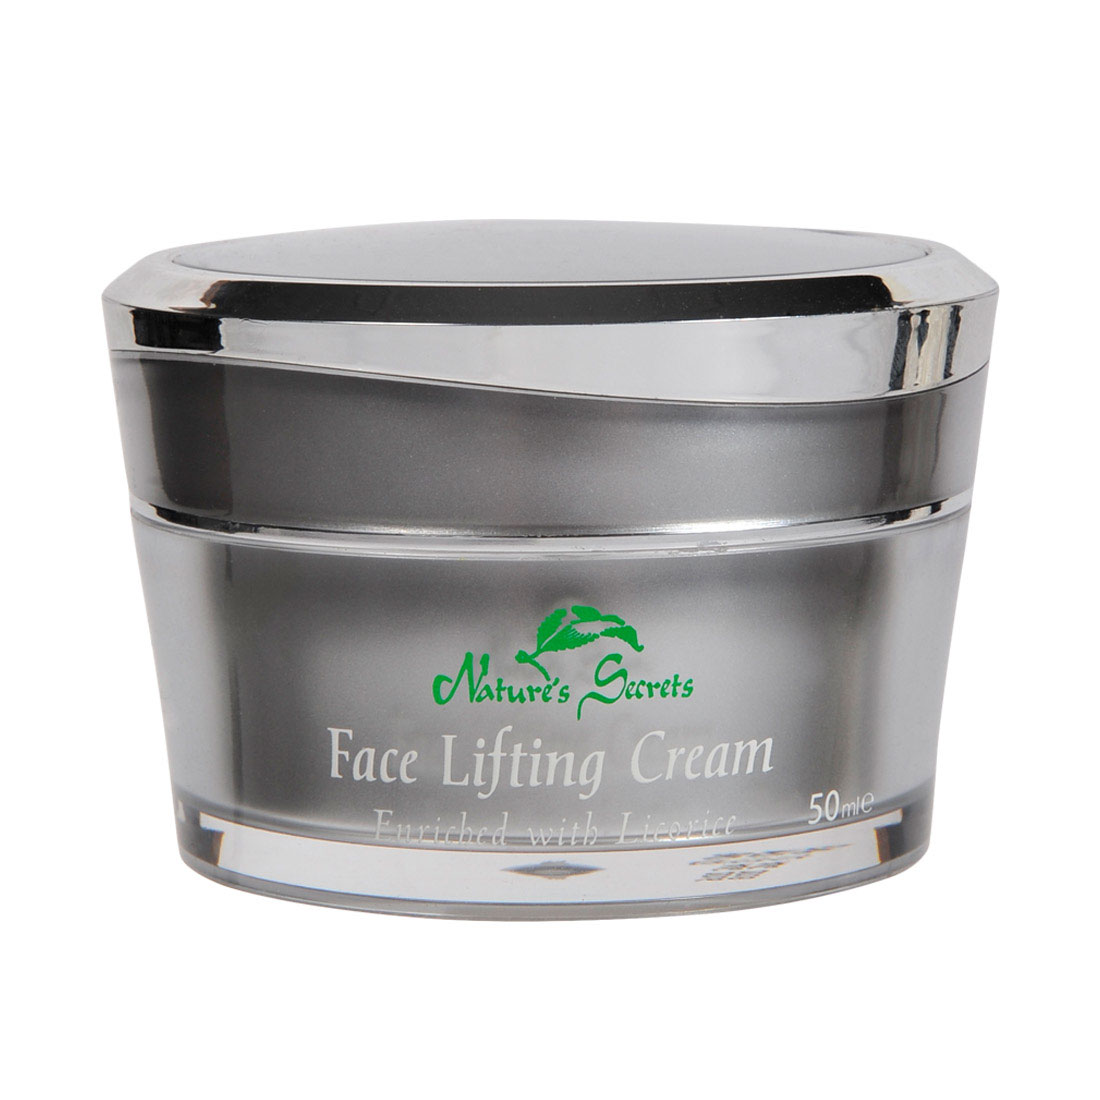 Nature's Secrets Platinum Face Lifting Cream With Licorice - 50ml